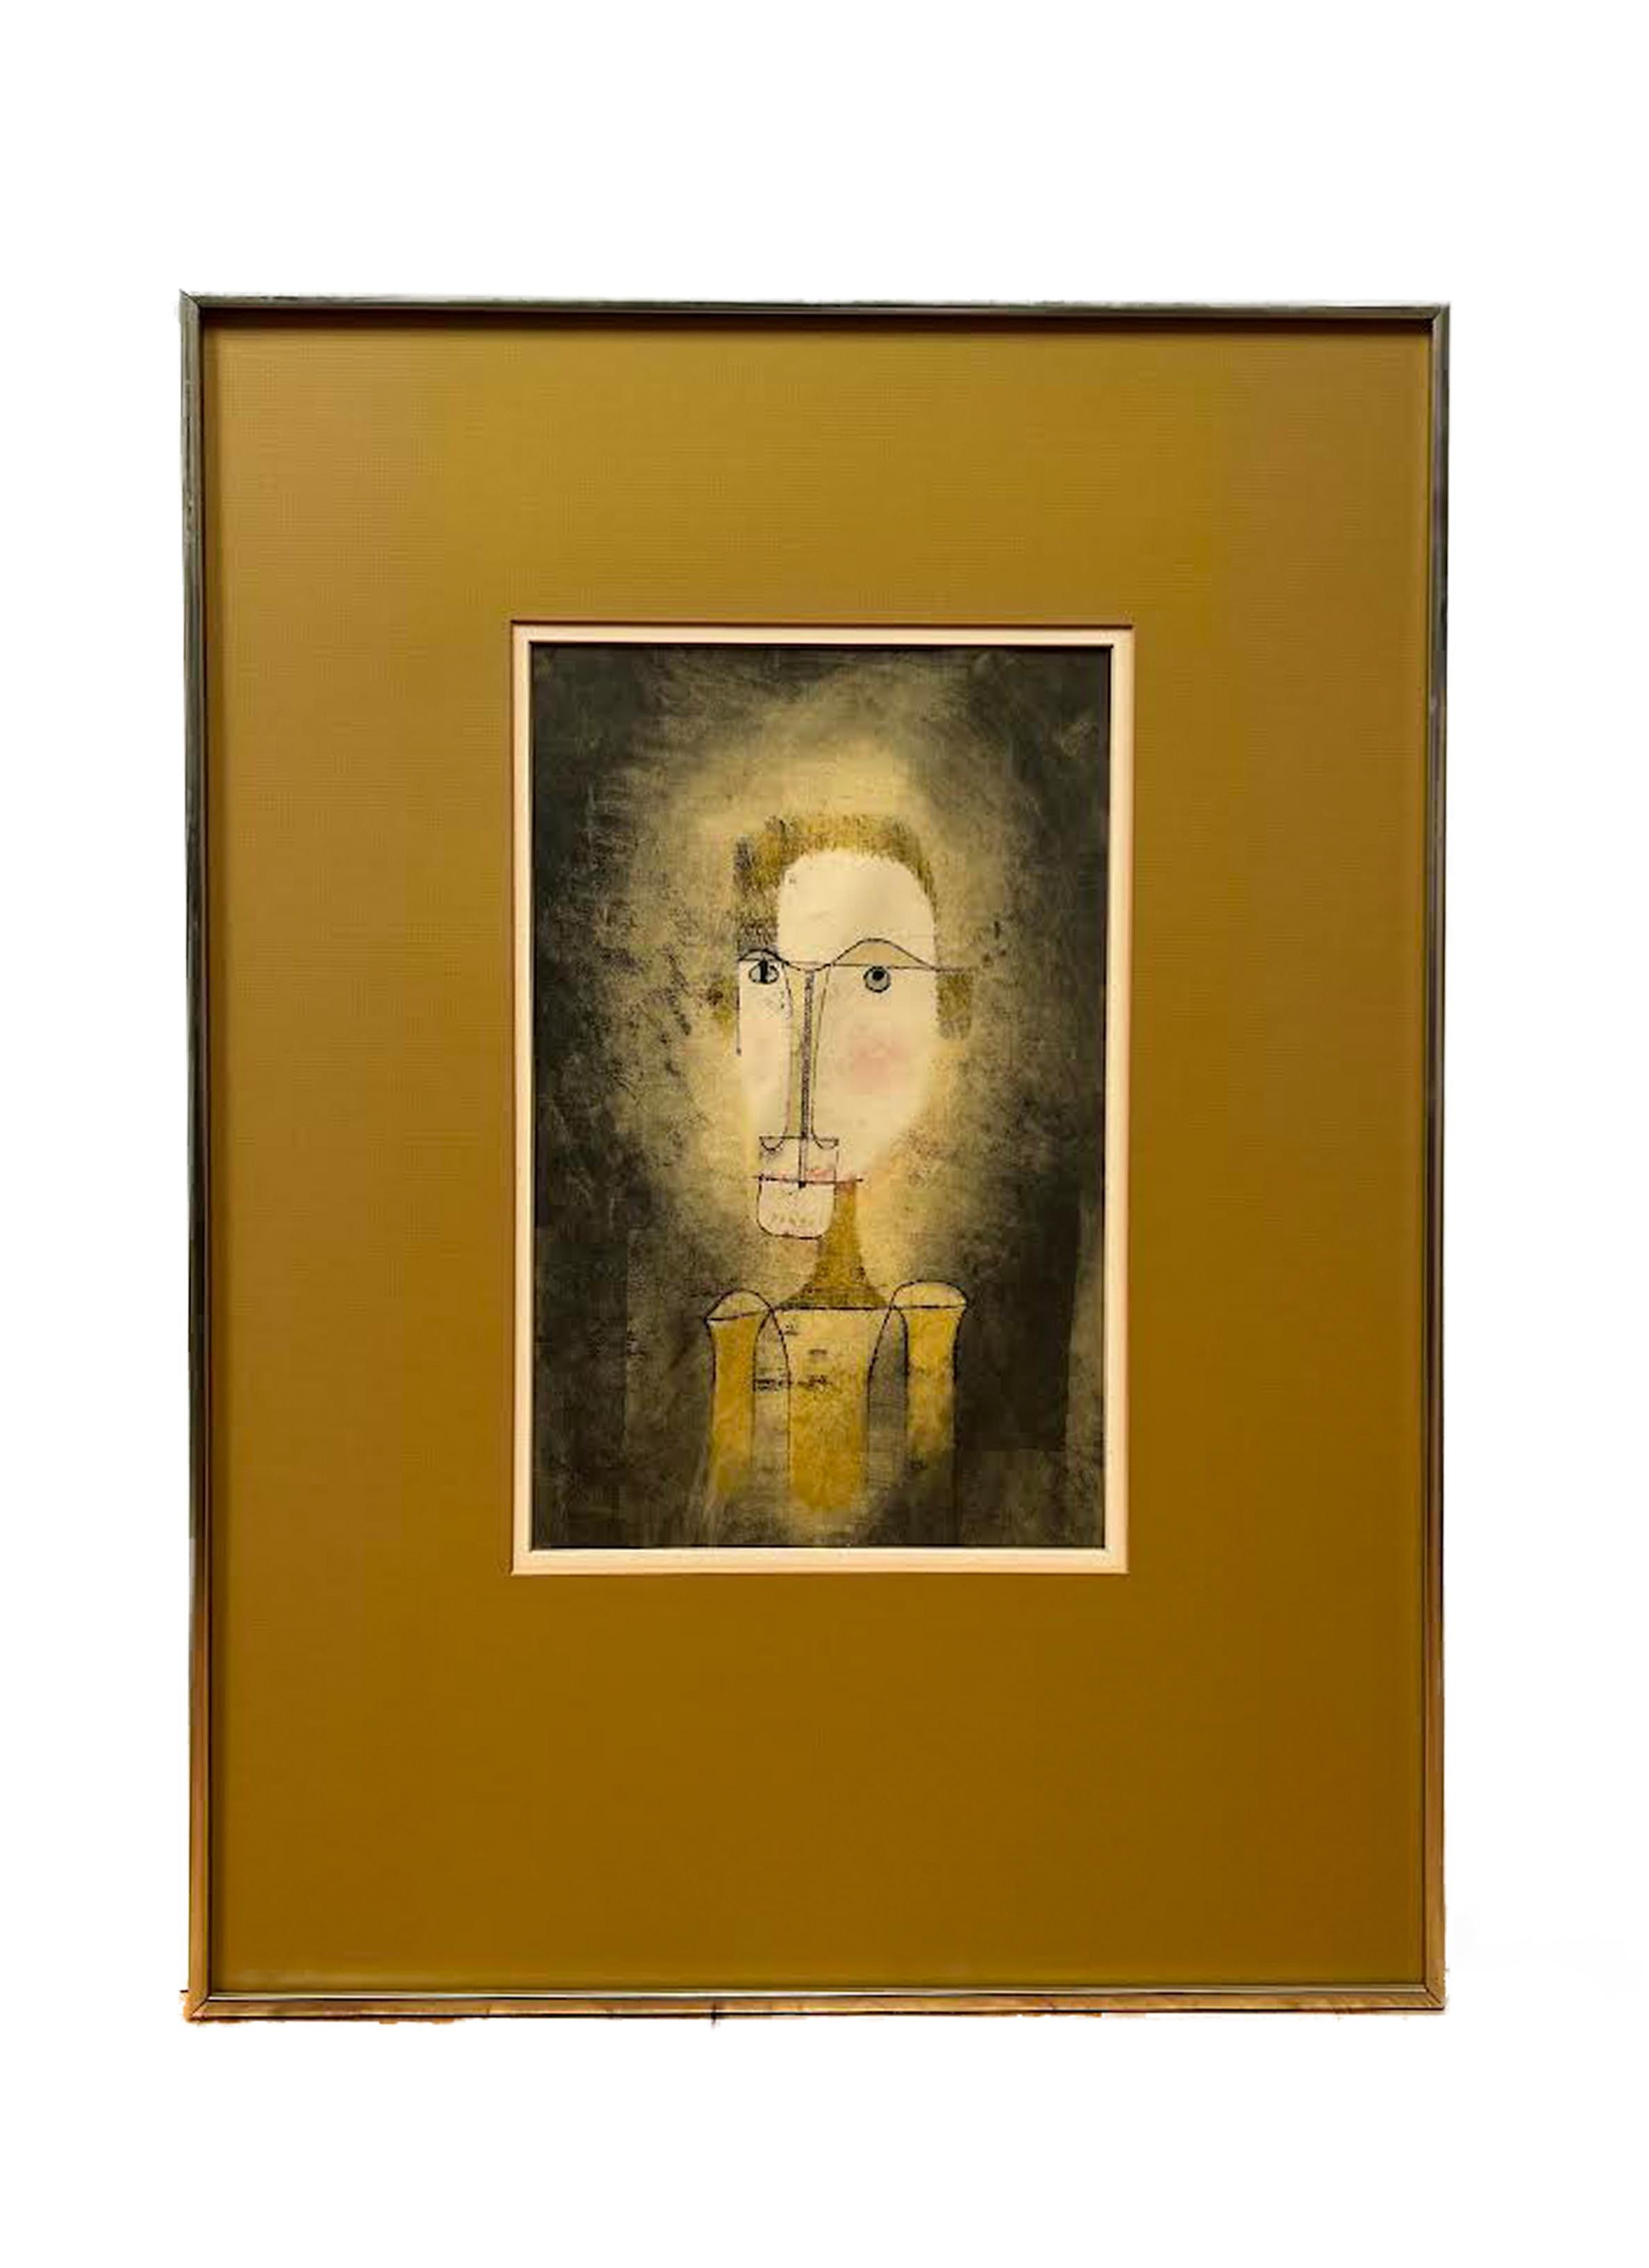 Cette affiche a été éditée en 1964 par la Galerie Berggruen en Collaboration avec Felix Klee, le fils de l'artiste.  Le jaune foncé mat recouvre la partie inférieure de l'affiche où figurent les informations sur le Bergrruen.

Paul Klee (1879 -